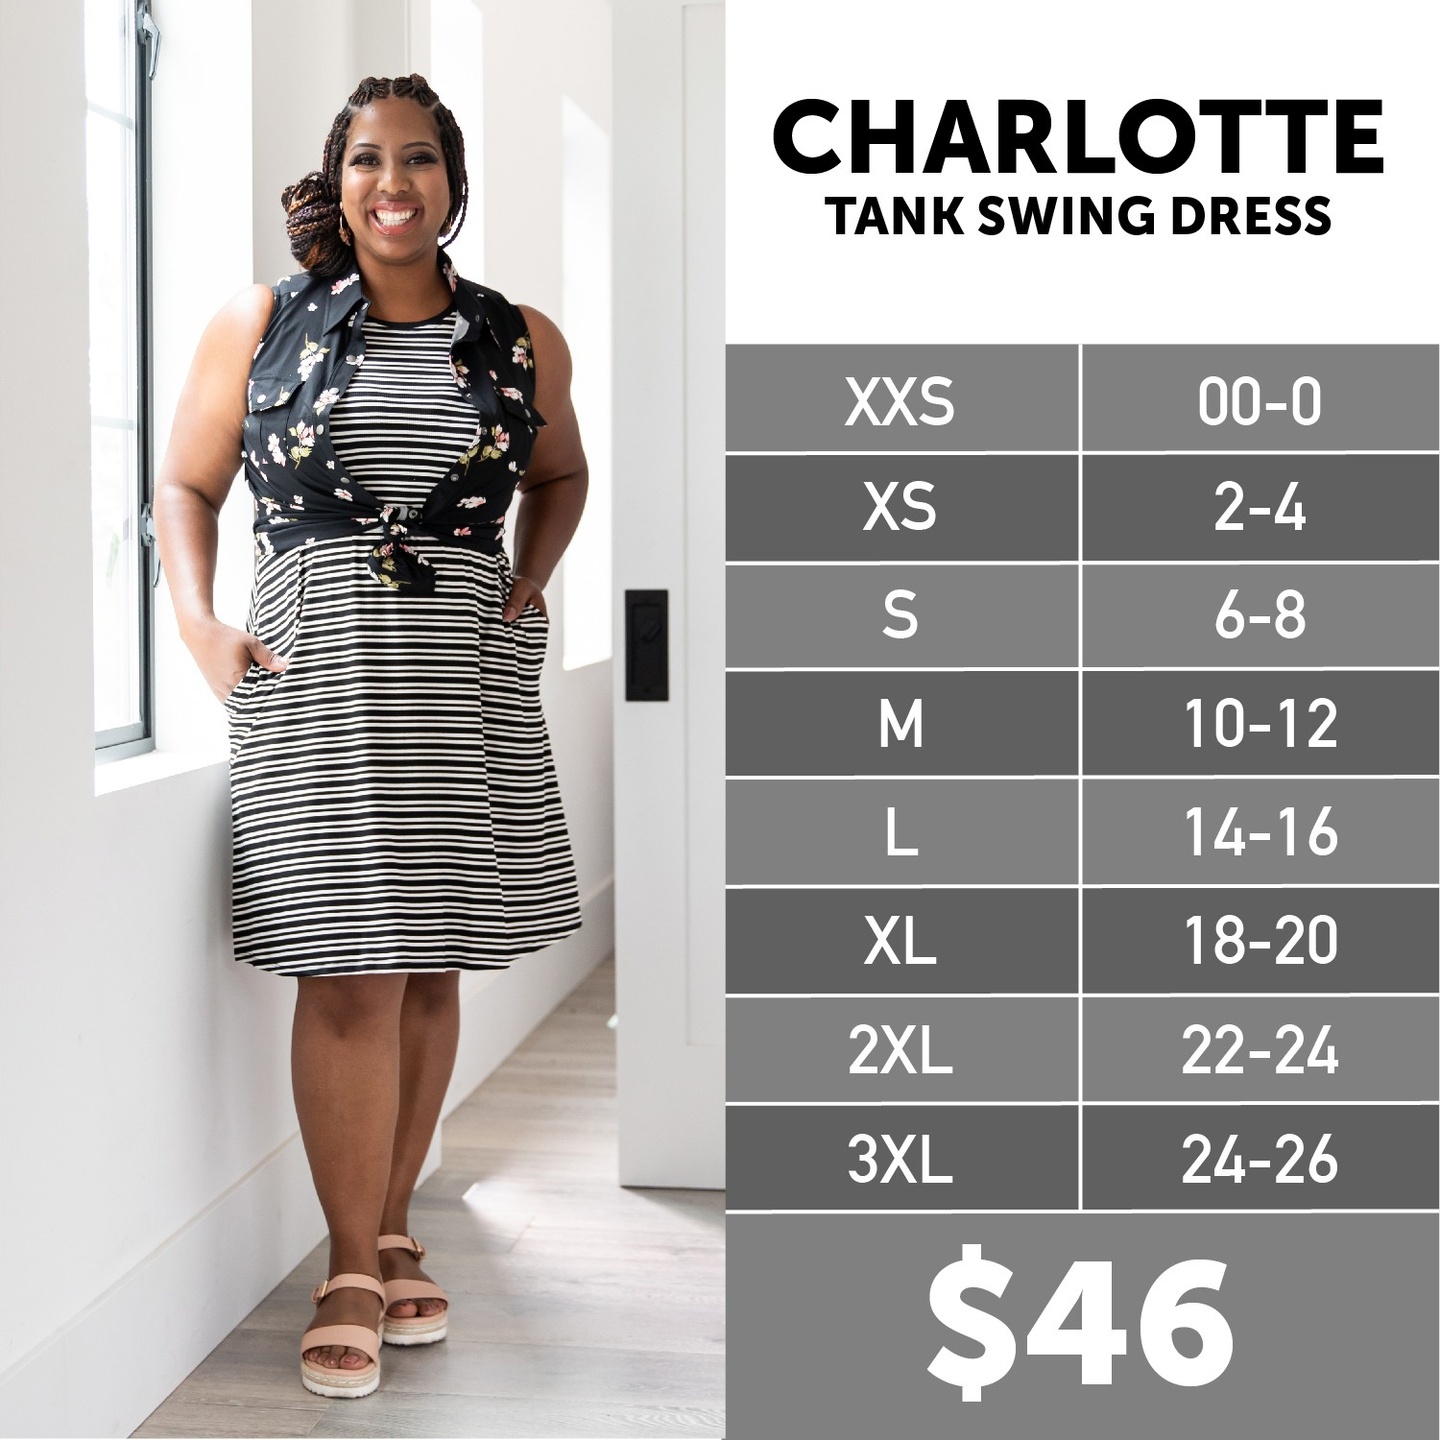 Lularoe CHARLOTTE TANK SWING DRESS Size Chart